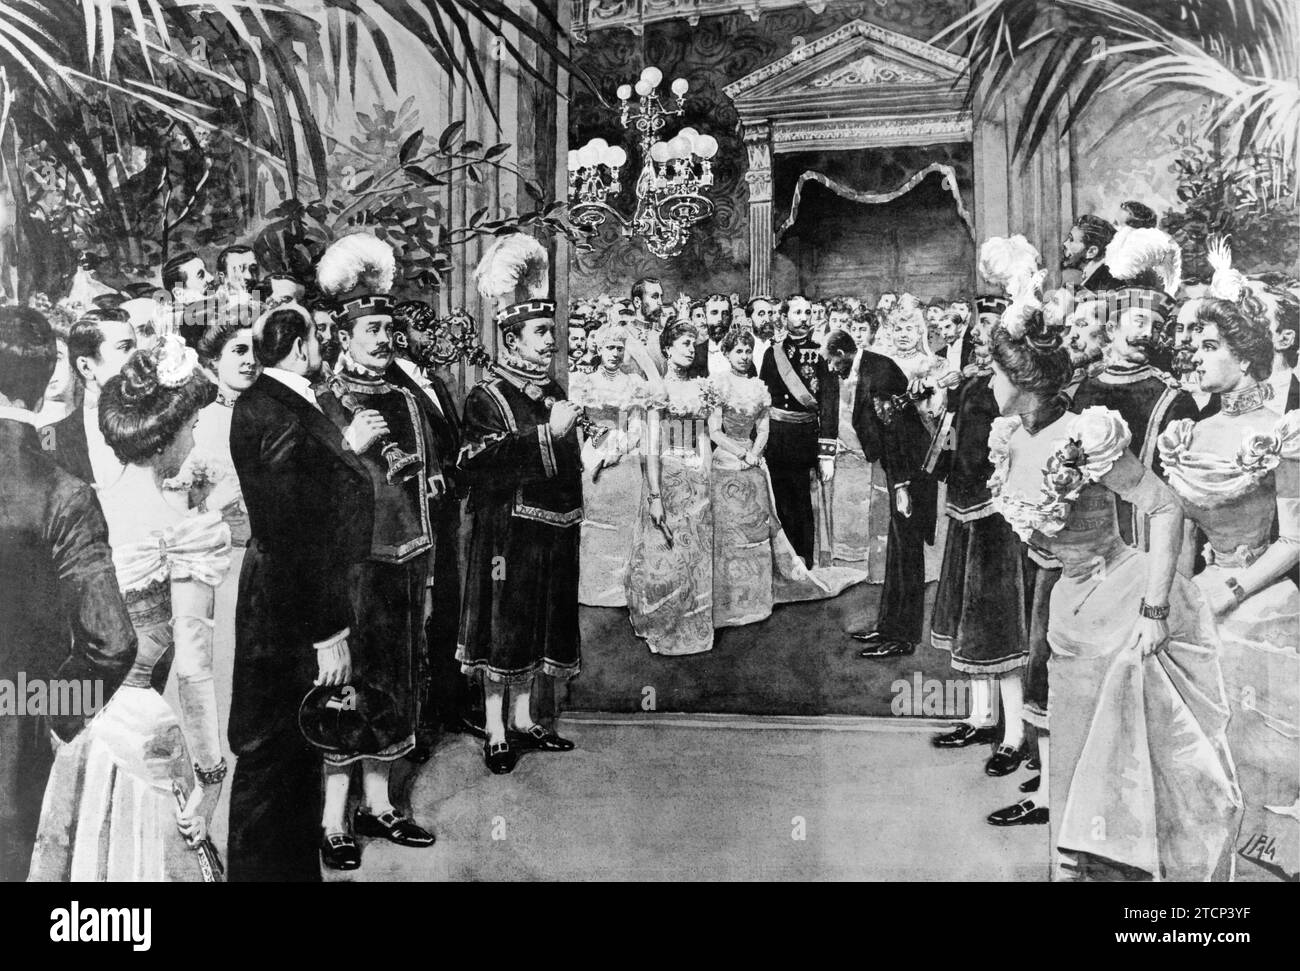 Madrid, 1901. Zeichnung von Luis Palao des feierlichen Empfangs im Rathaus der Hauptstadt anlässlich der Hochzeit der Prinzessin von Asturien. Quelle: Album/Archivo ABC Stockfoto